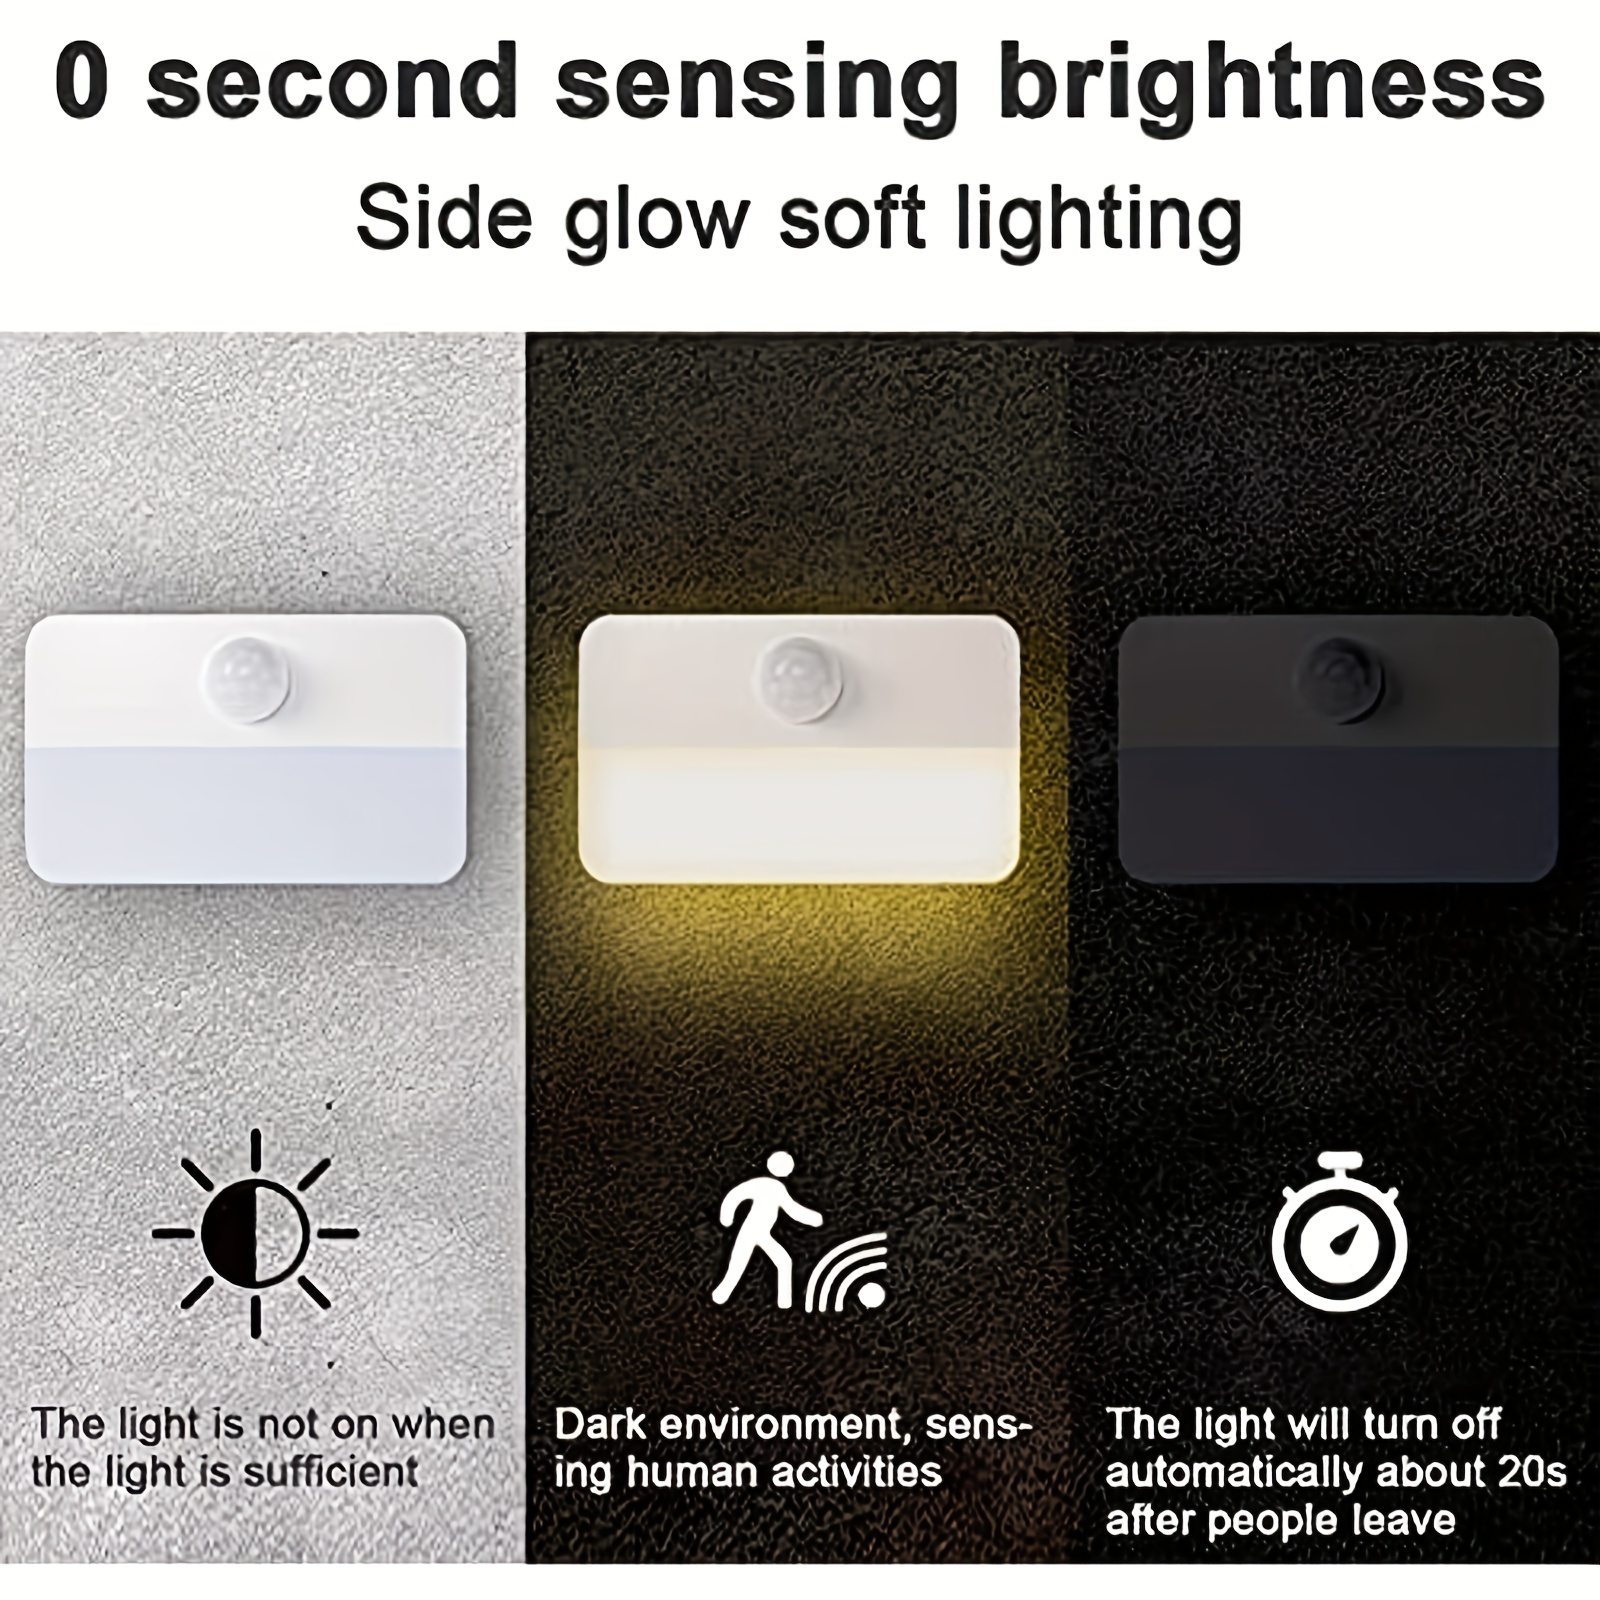 Luz nocturna LED, con sensor de movimiento y sensor de luz, luz nocturna  LED para la habitación del bebé (blanco cálido)